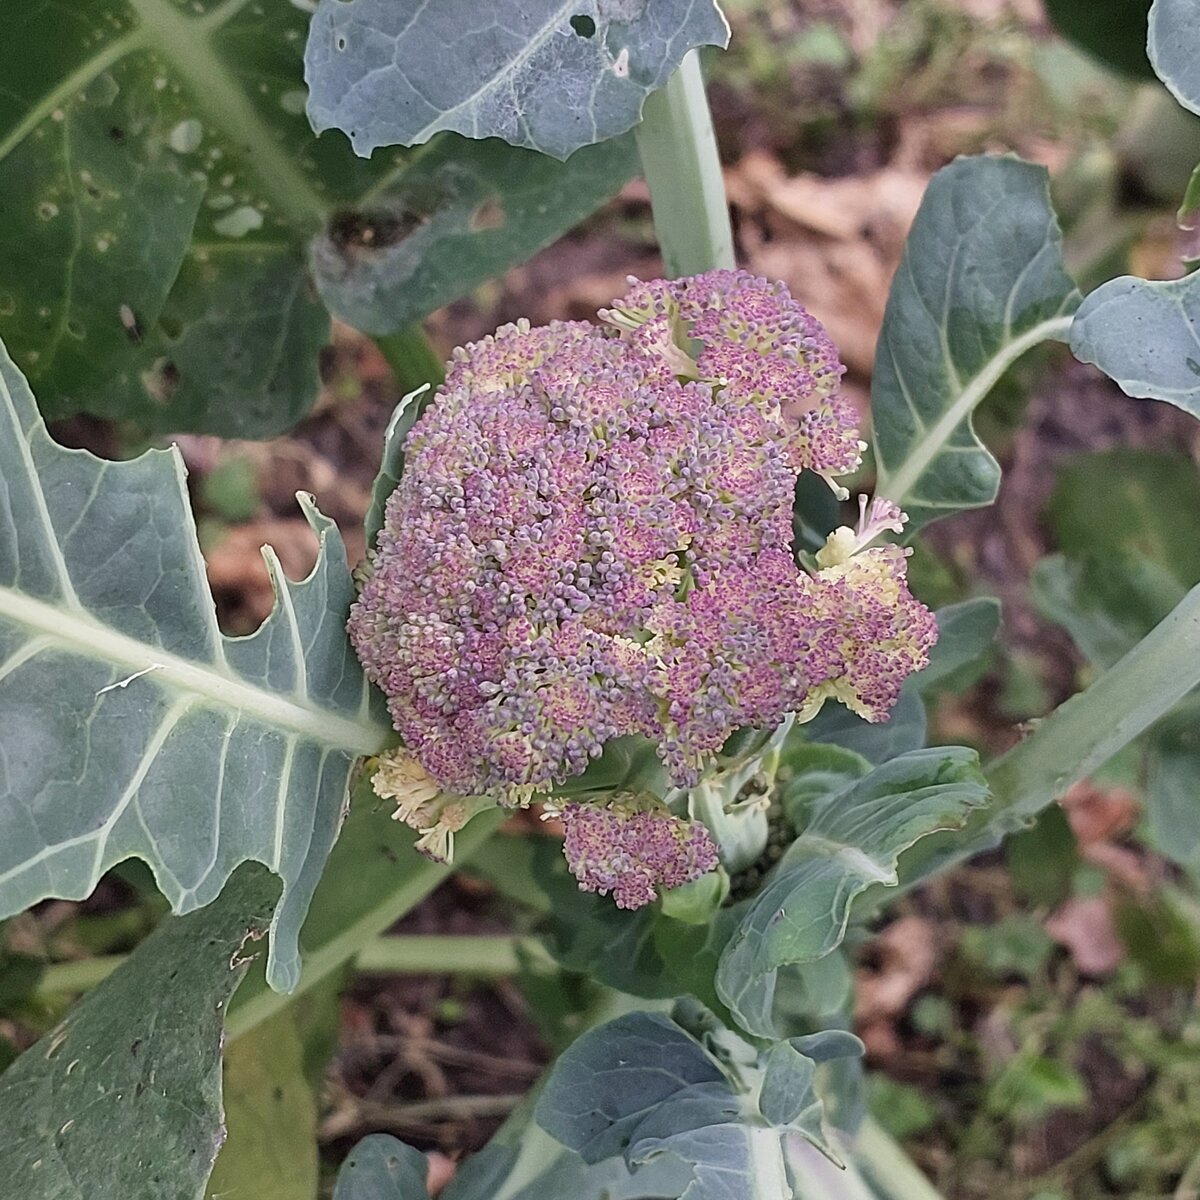 More purple broccoli